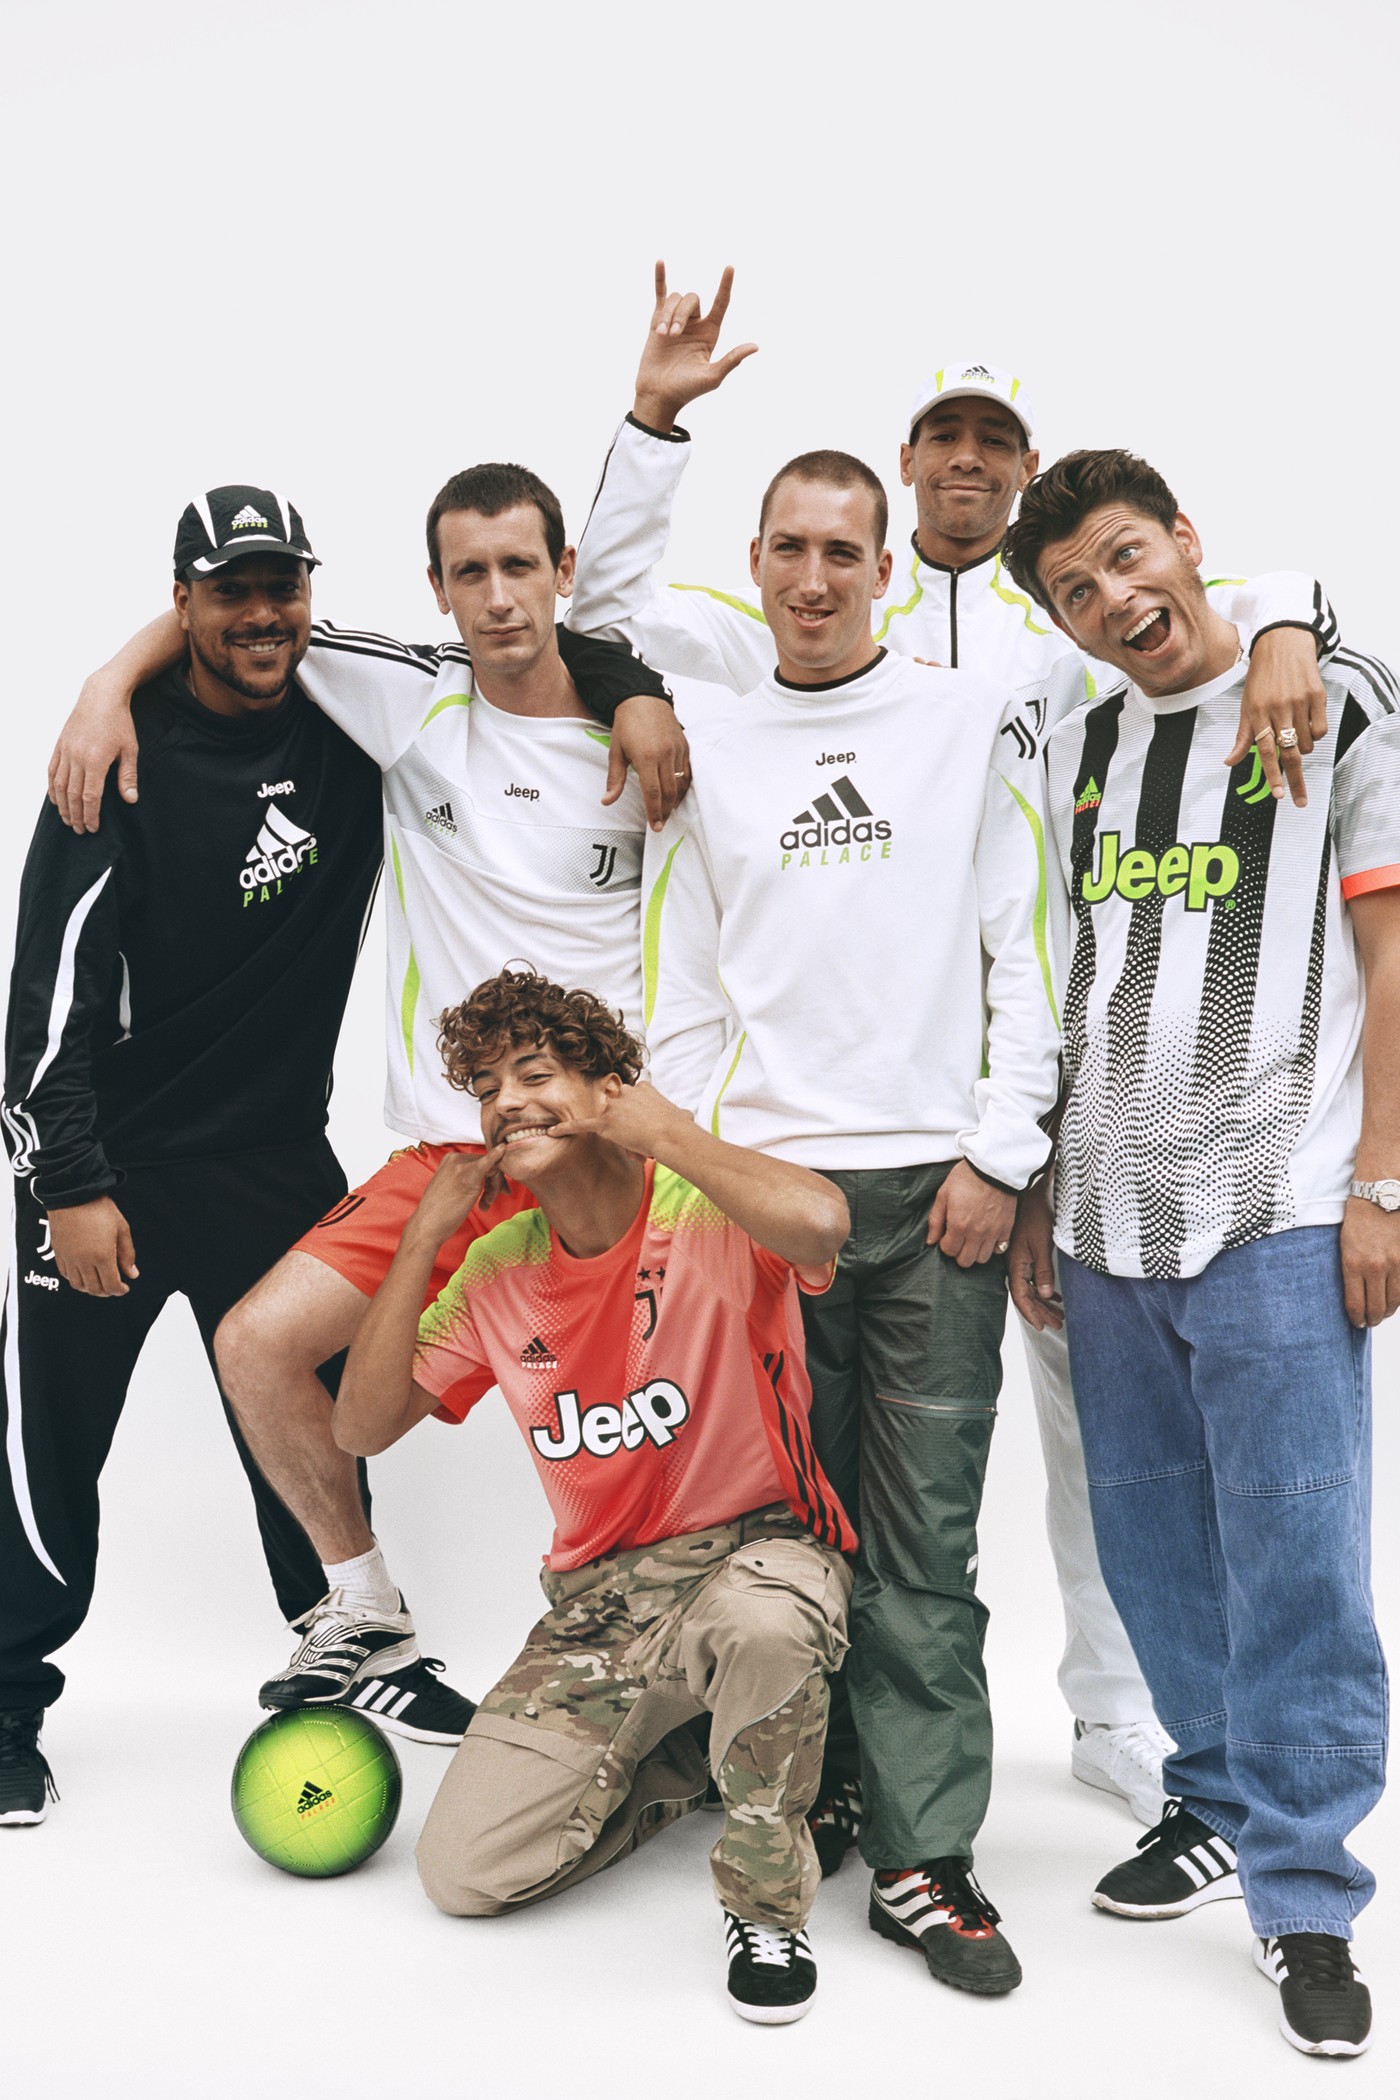 Juventus x PALACE x adidasのスペシャルコラボコレクションが発売 